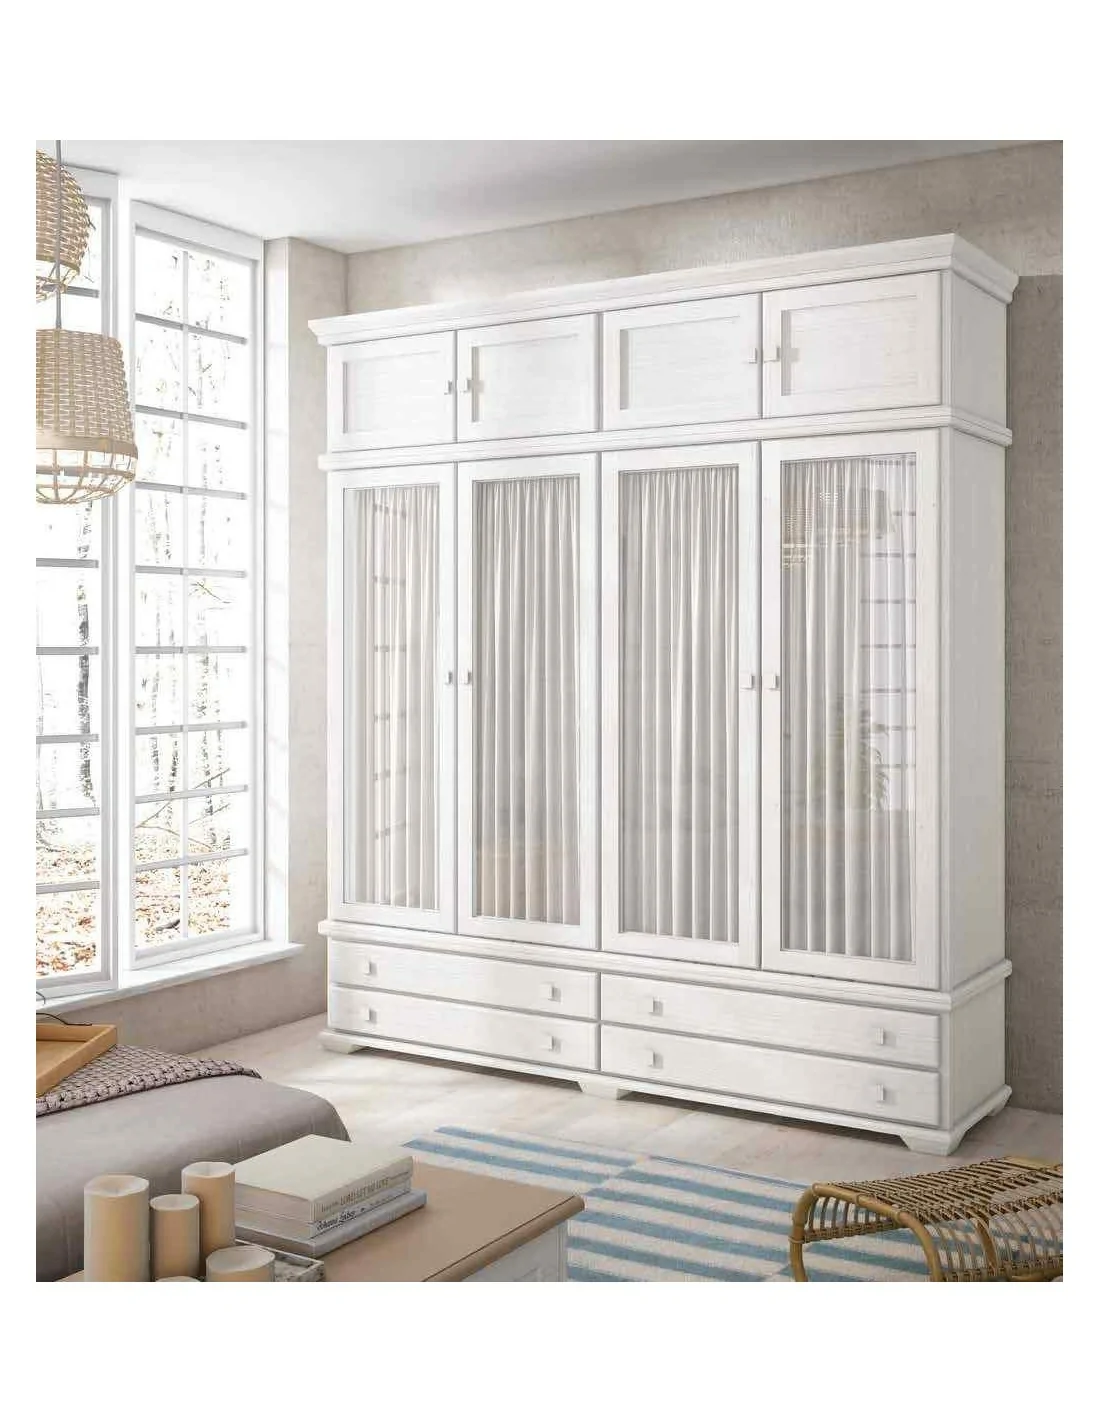 Armario de dormitorio de matrimonio estilo provenzal clasico con colores  lacados o barnizados (6).jpg